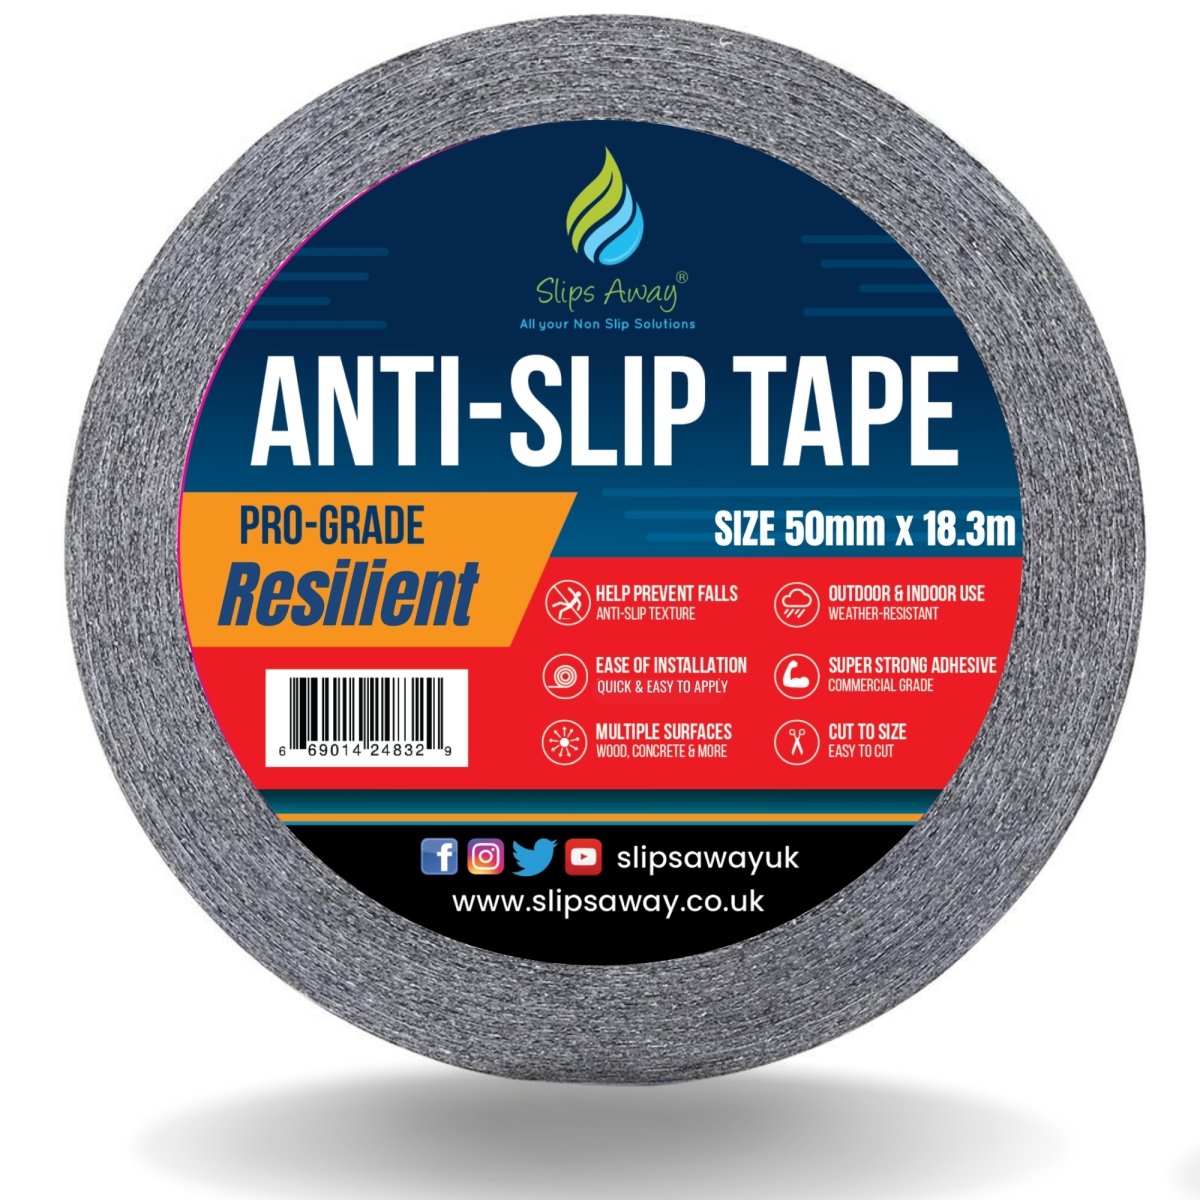 Resilient Soft Touch Textured "Rubber Feel" Anti-Slip Tape - Slips Away - Anti slip tape - -